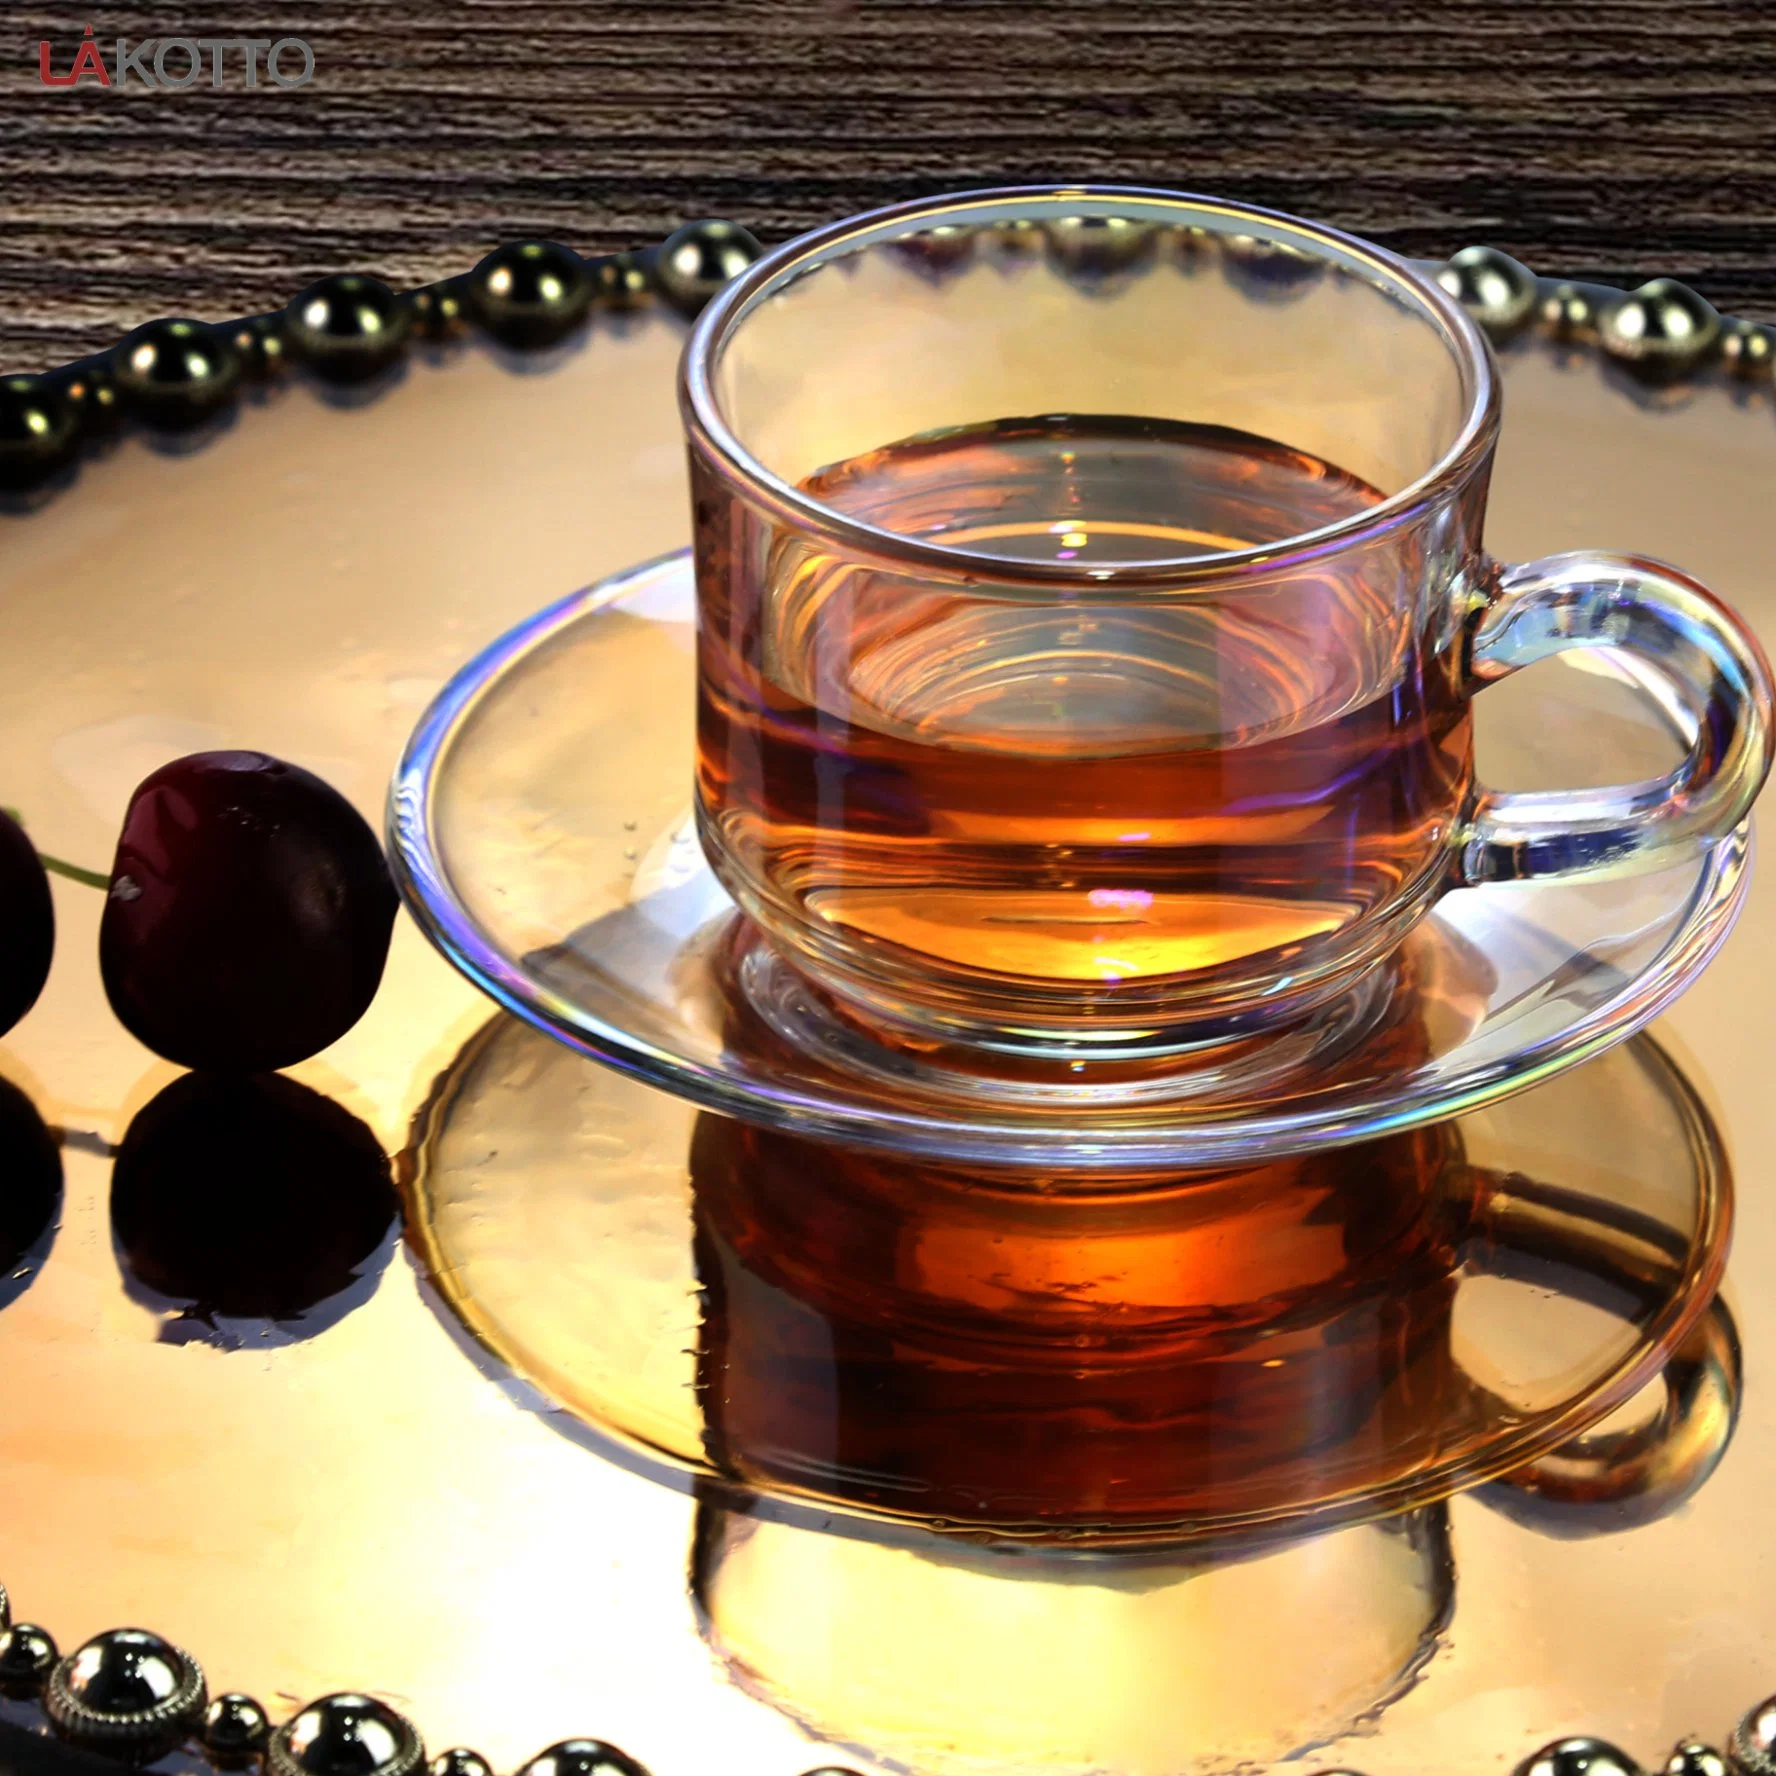 Novo Escritório de vidro Lakotto chá de vidro basculante do Café Copos Caneca Cup